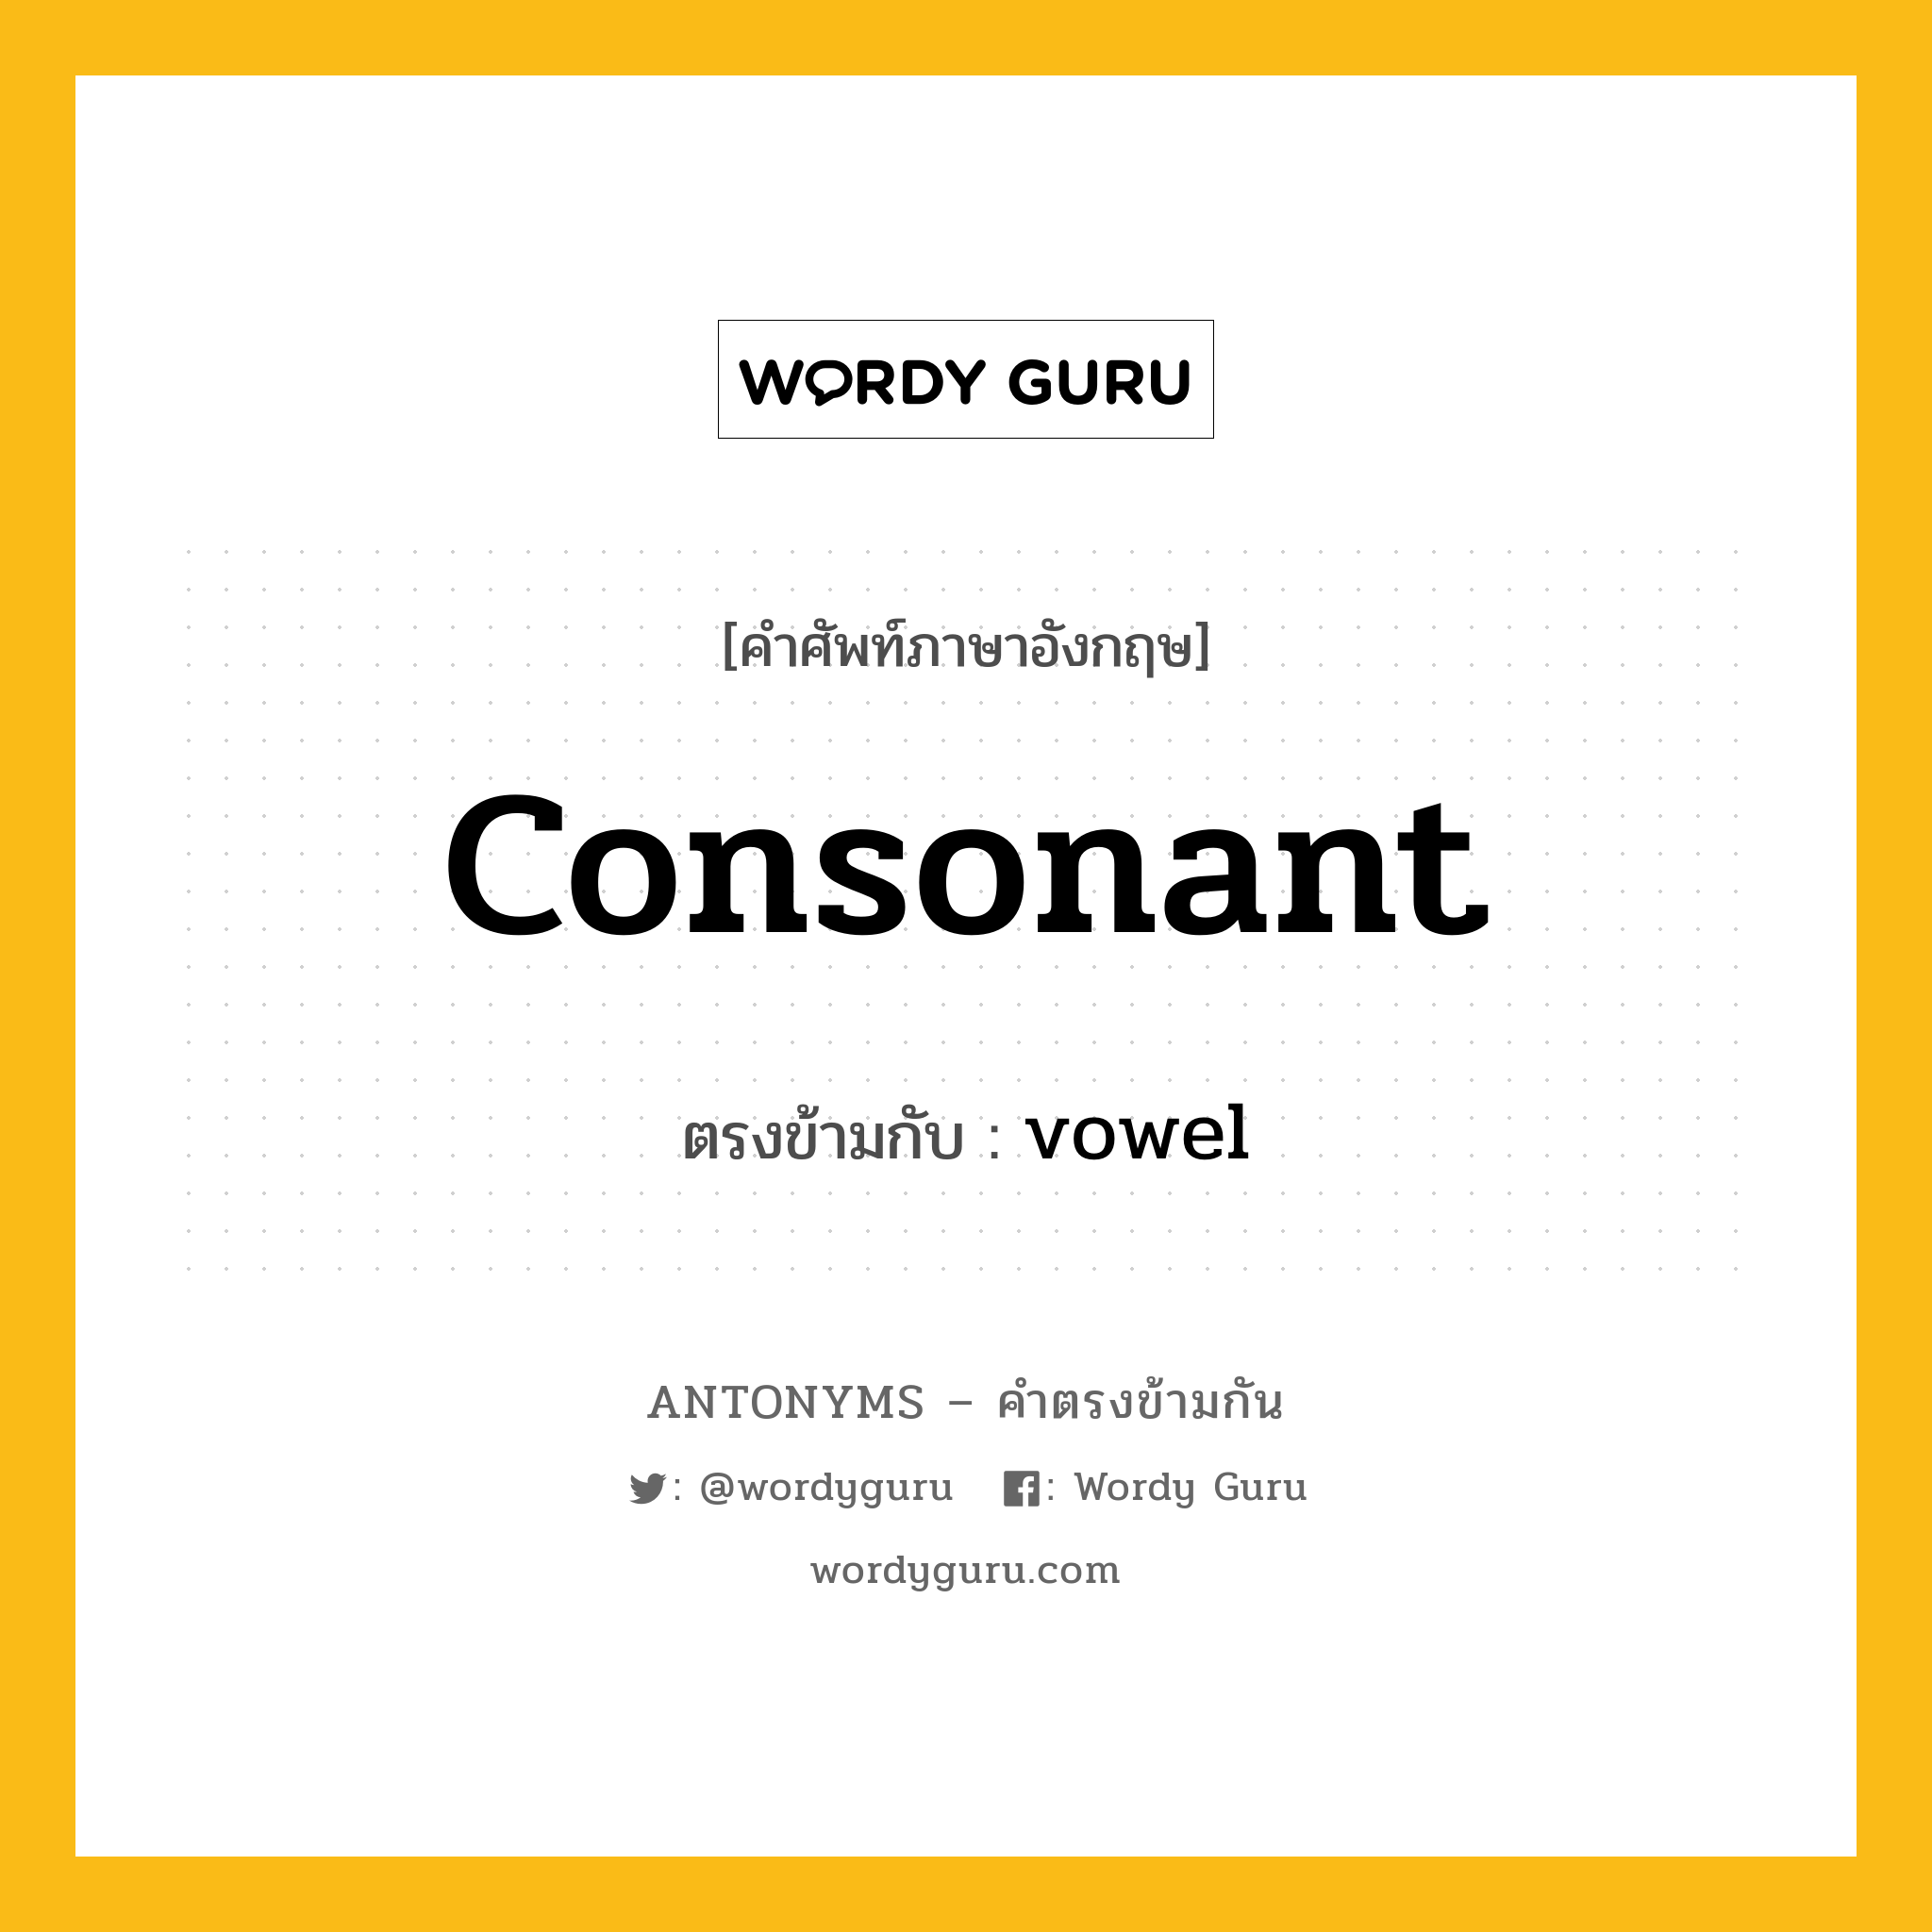 consonant เป็นคำตรงข้ามกับคำไหนบ้าง?, คำศัพท์ภาษาอังกฤษ consonant ตรงข้ามกับ vowel หมวด vowel